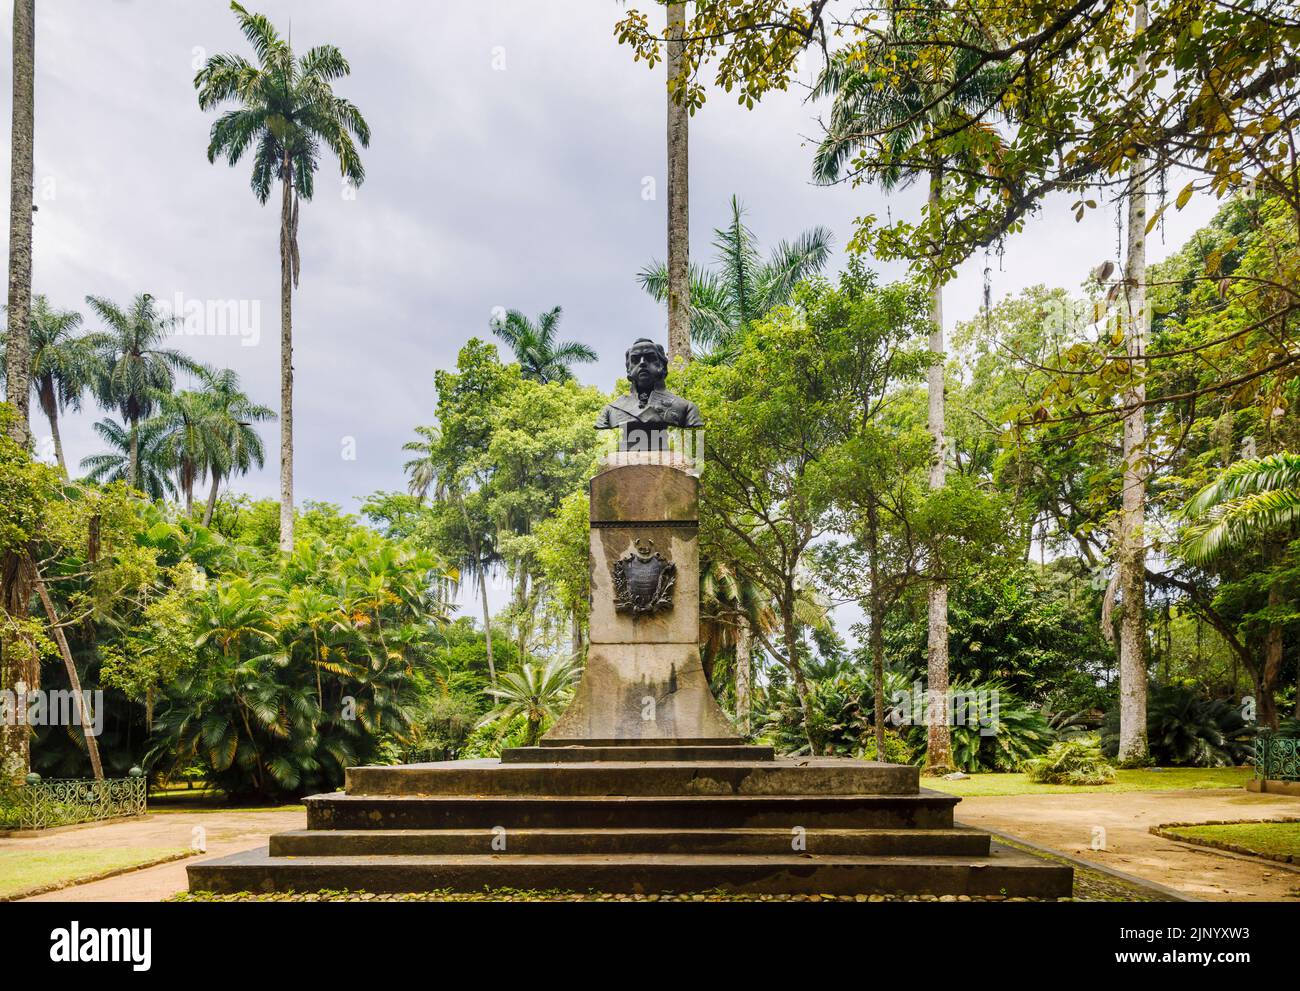 Busto y escudo de armas de D Joao VI, fundador del Jardín Botánico (Jardín Botánico), Zona Sur, Río de Janeiro, Brasil Foto de stock